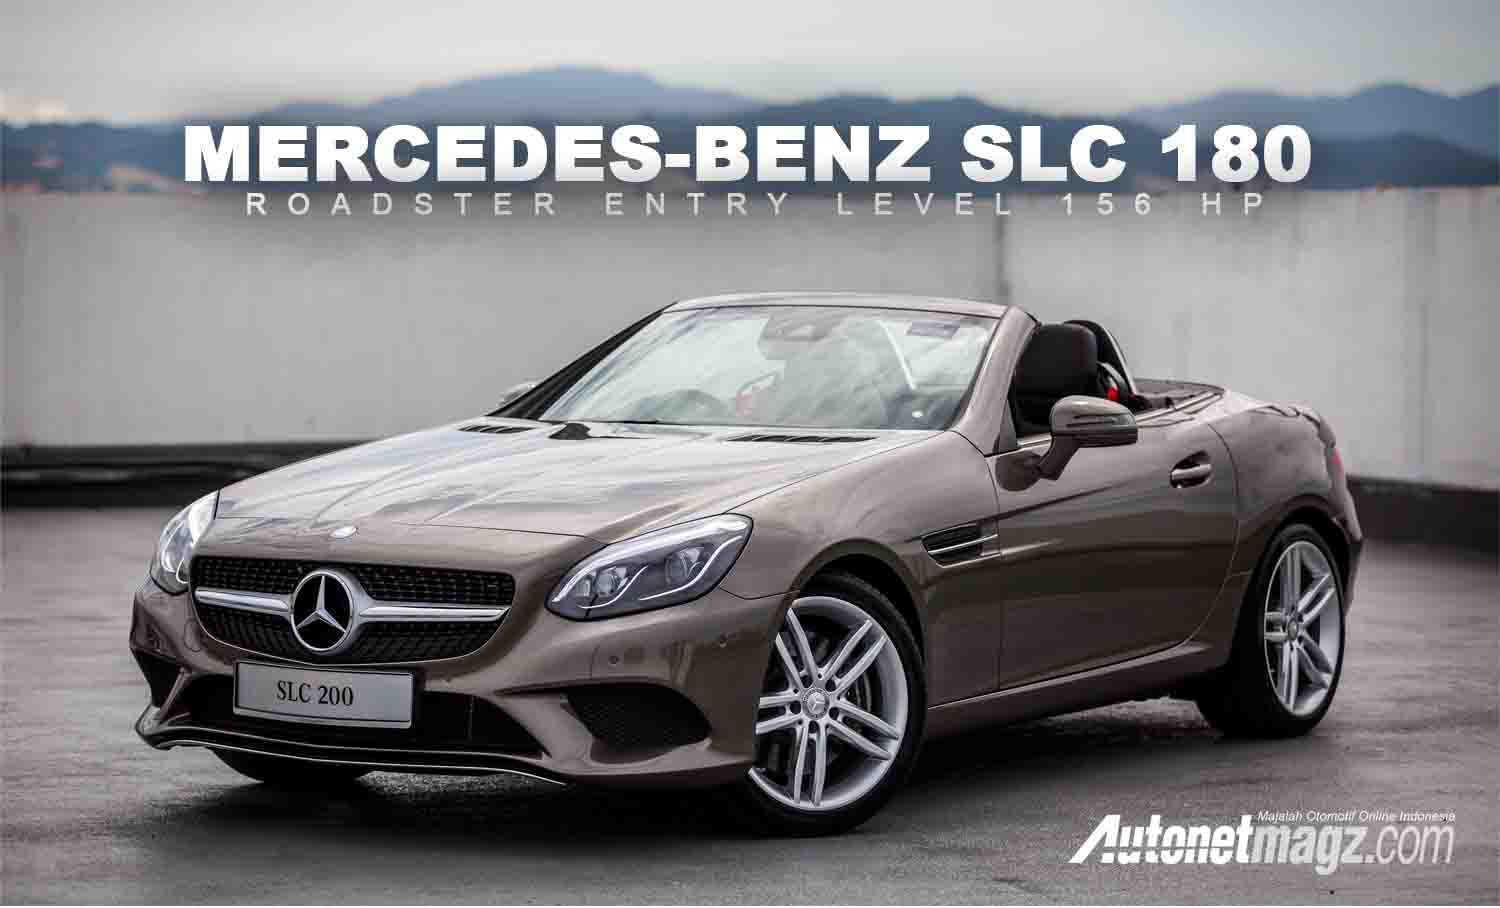 Mercedes Benz SLC 180 Kelas Entry Level 156 Hp AutonetMagz